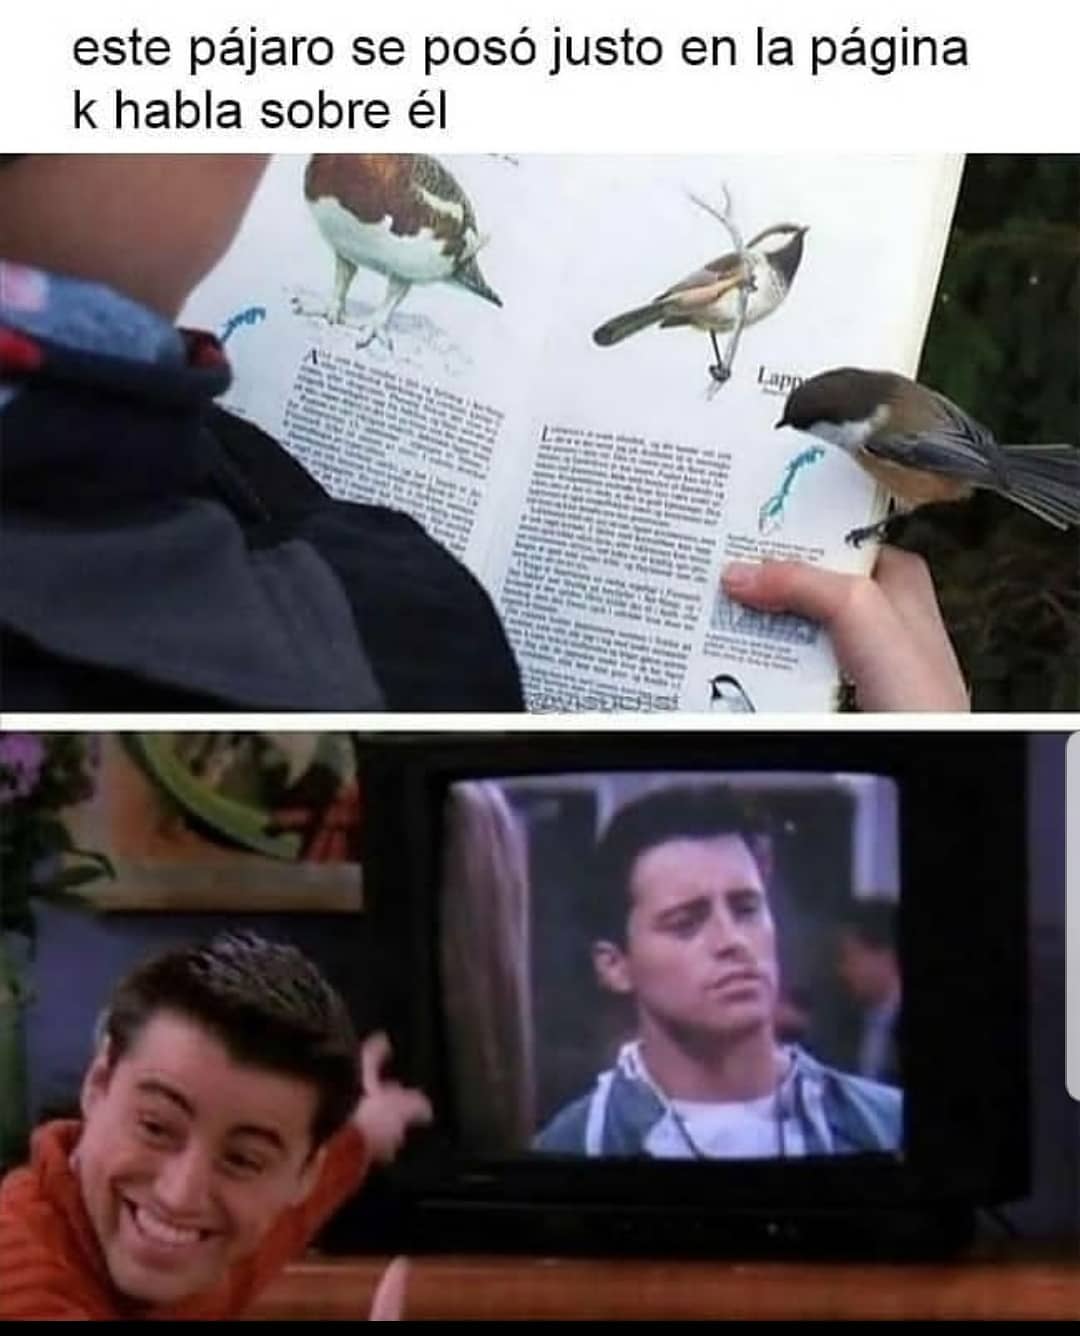 Este pájaro se posó justo en la página k habla sobre él.